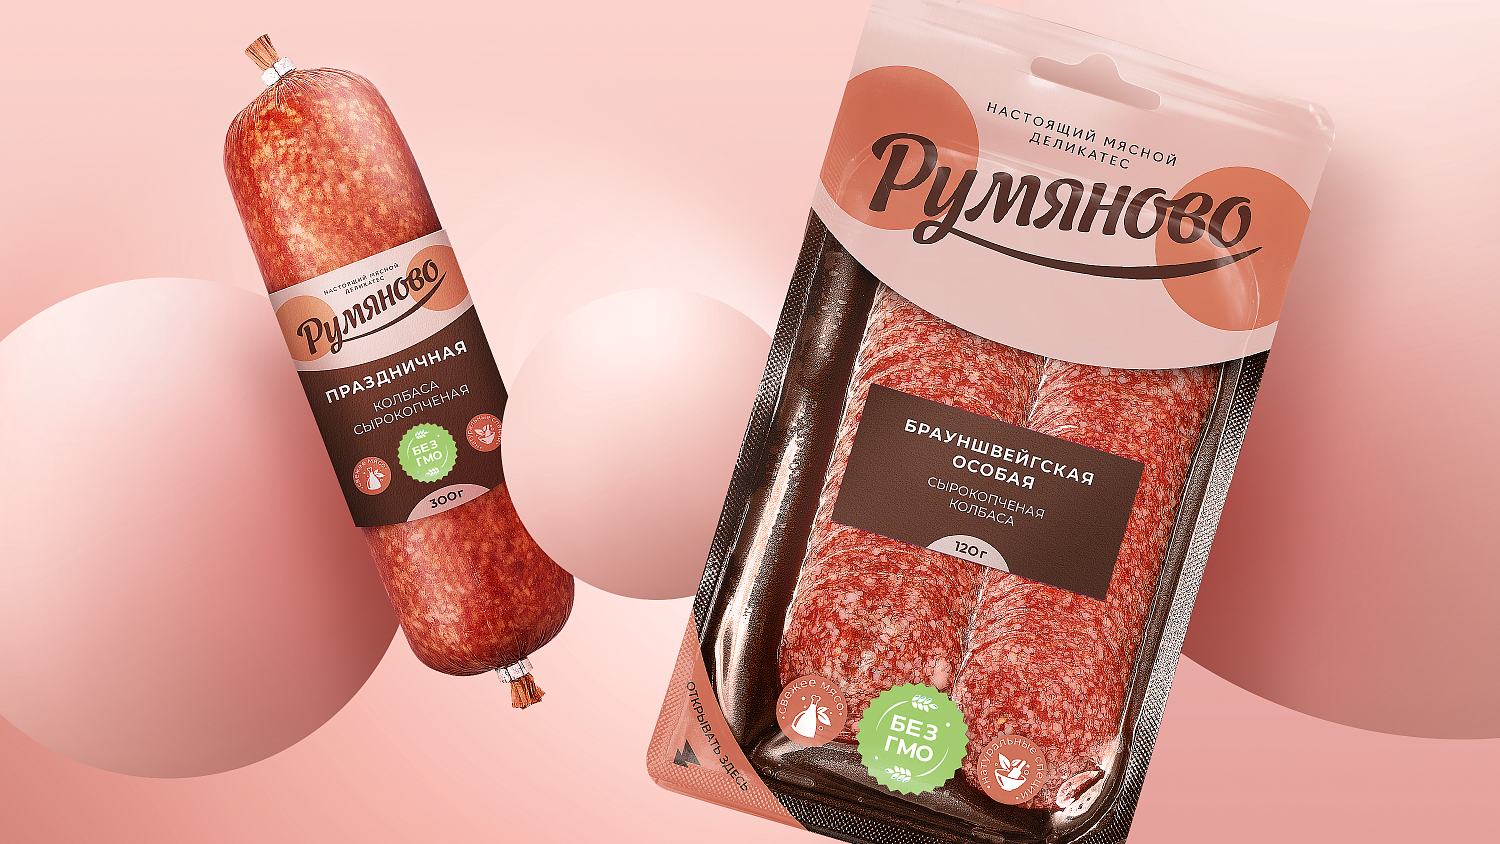 Румяново: дизайн упаковки колбасы - Портфолио Depot